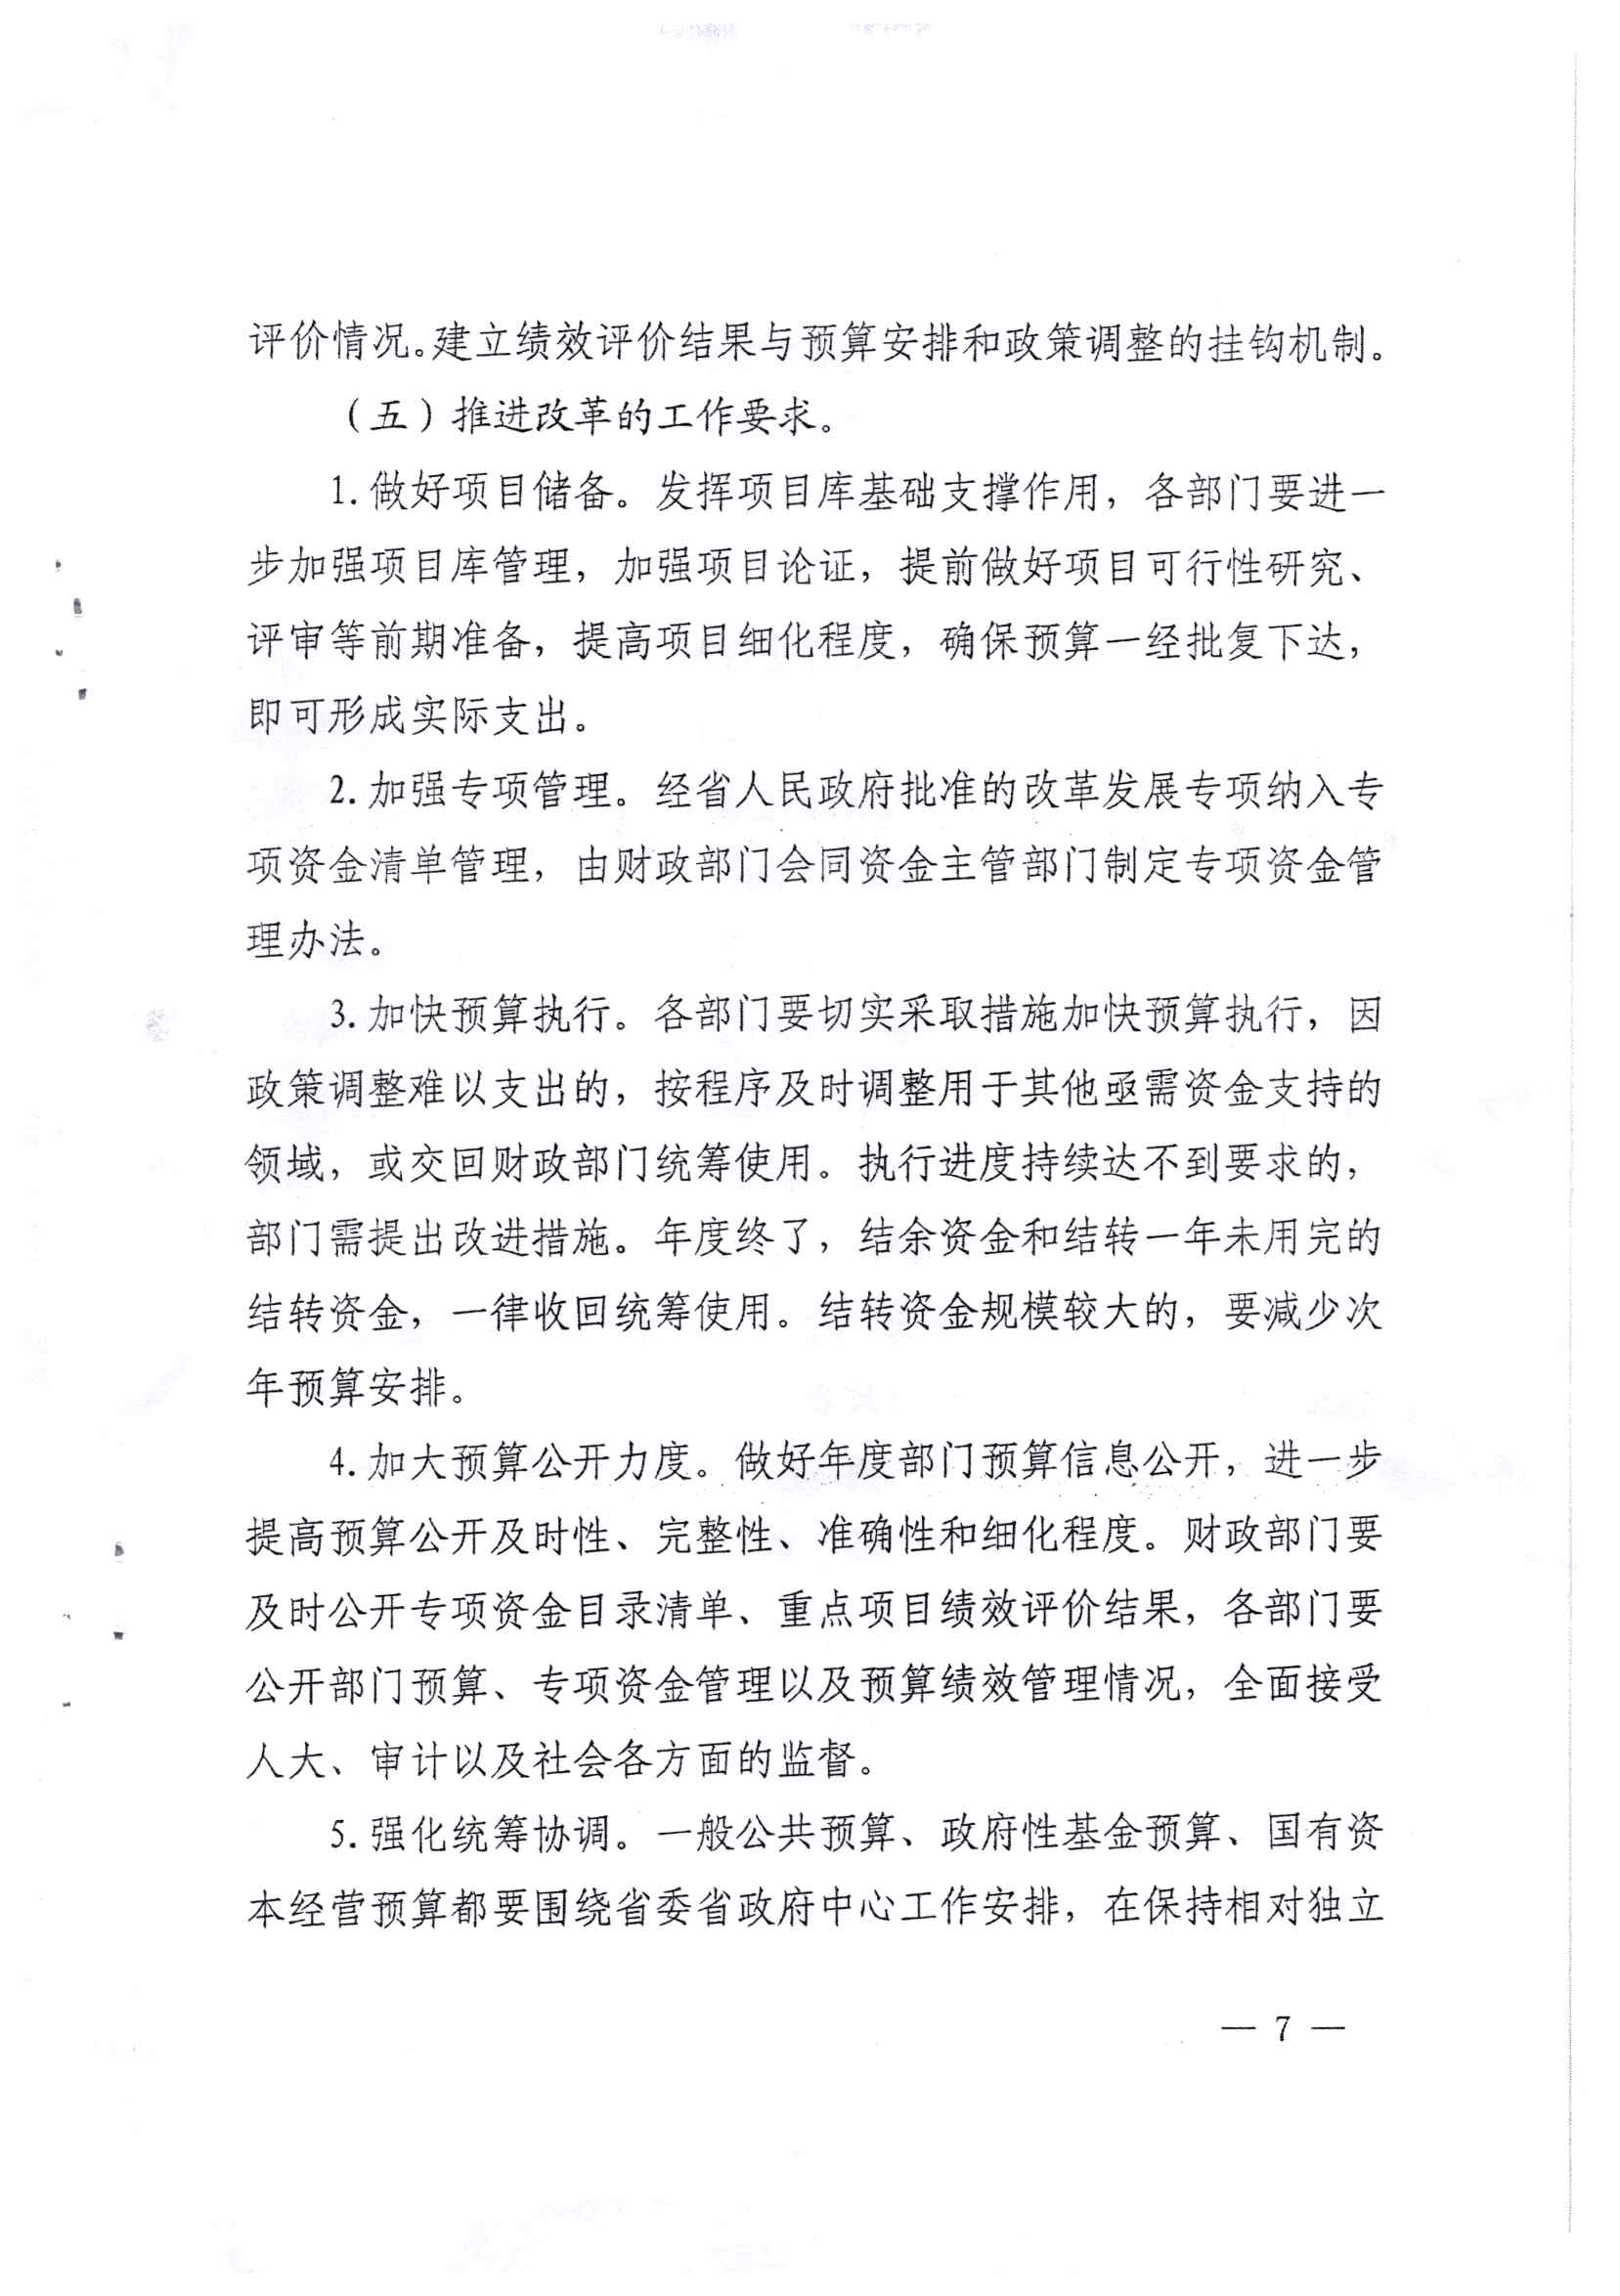 贵州省财政厅关于印发推进省级部门支出预算管理改革方案的通知_页面_7.jpg